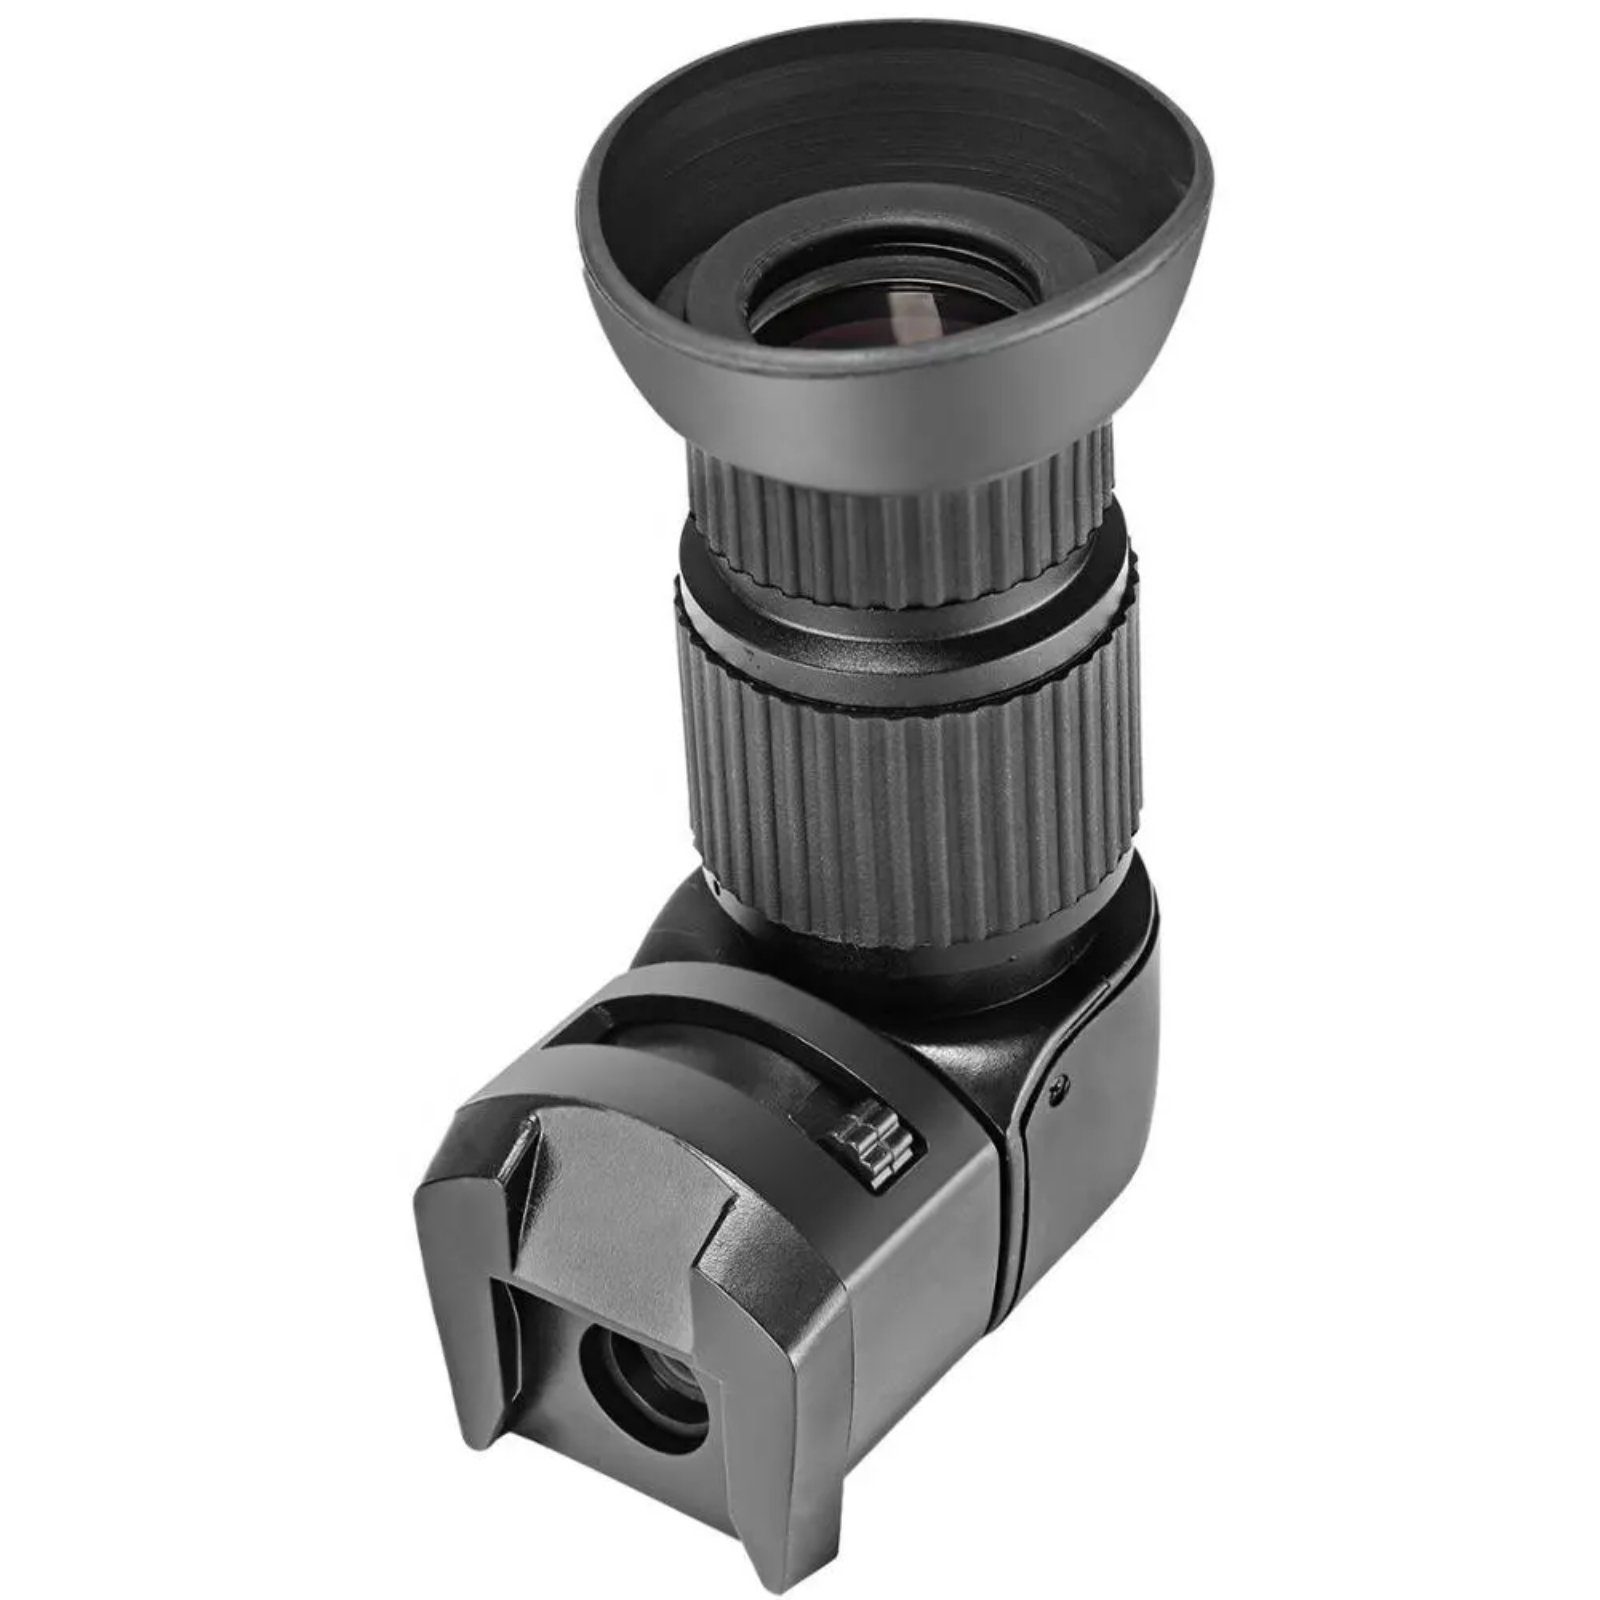 Winkelsucher Viewfinder Impulsfoto - 3,2-fach für Aufstecksucher DSLR Kameras 1,0